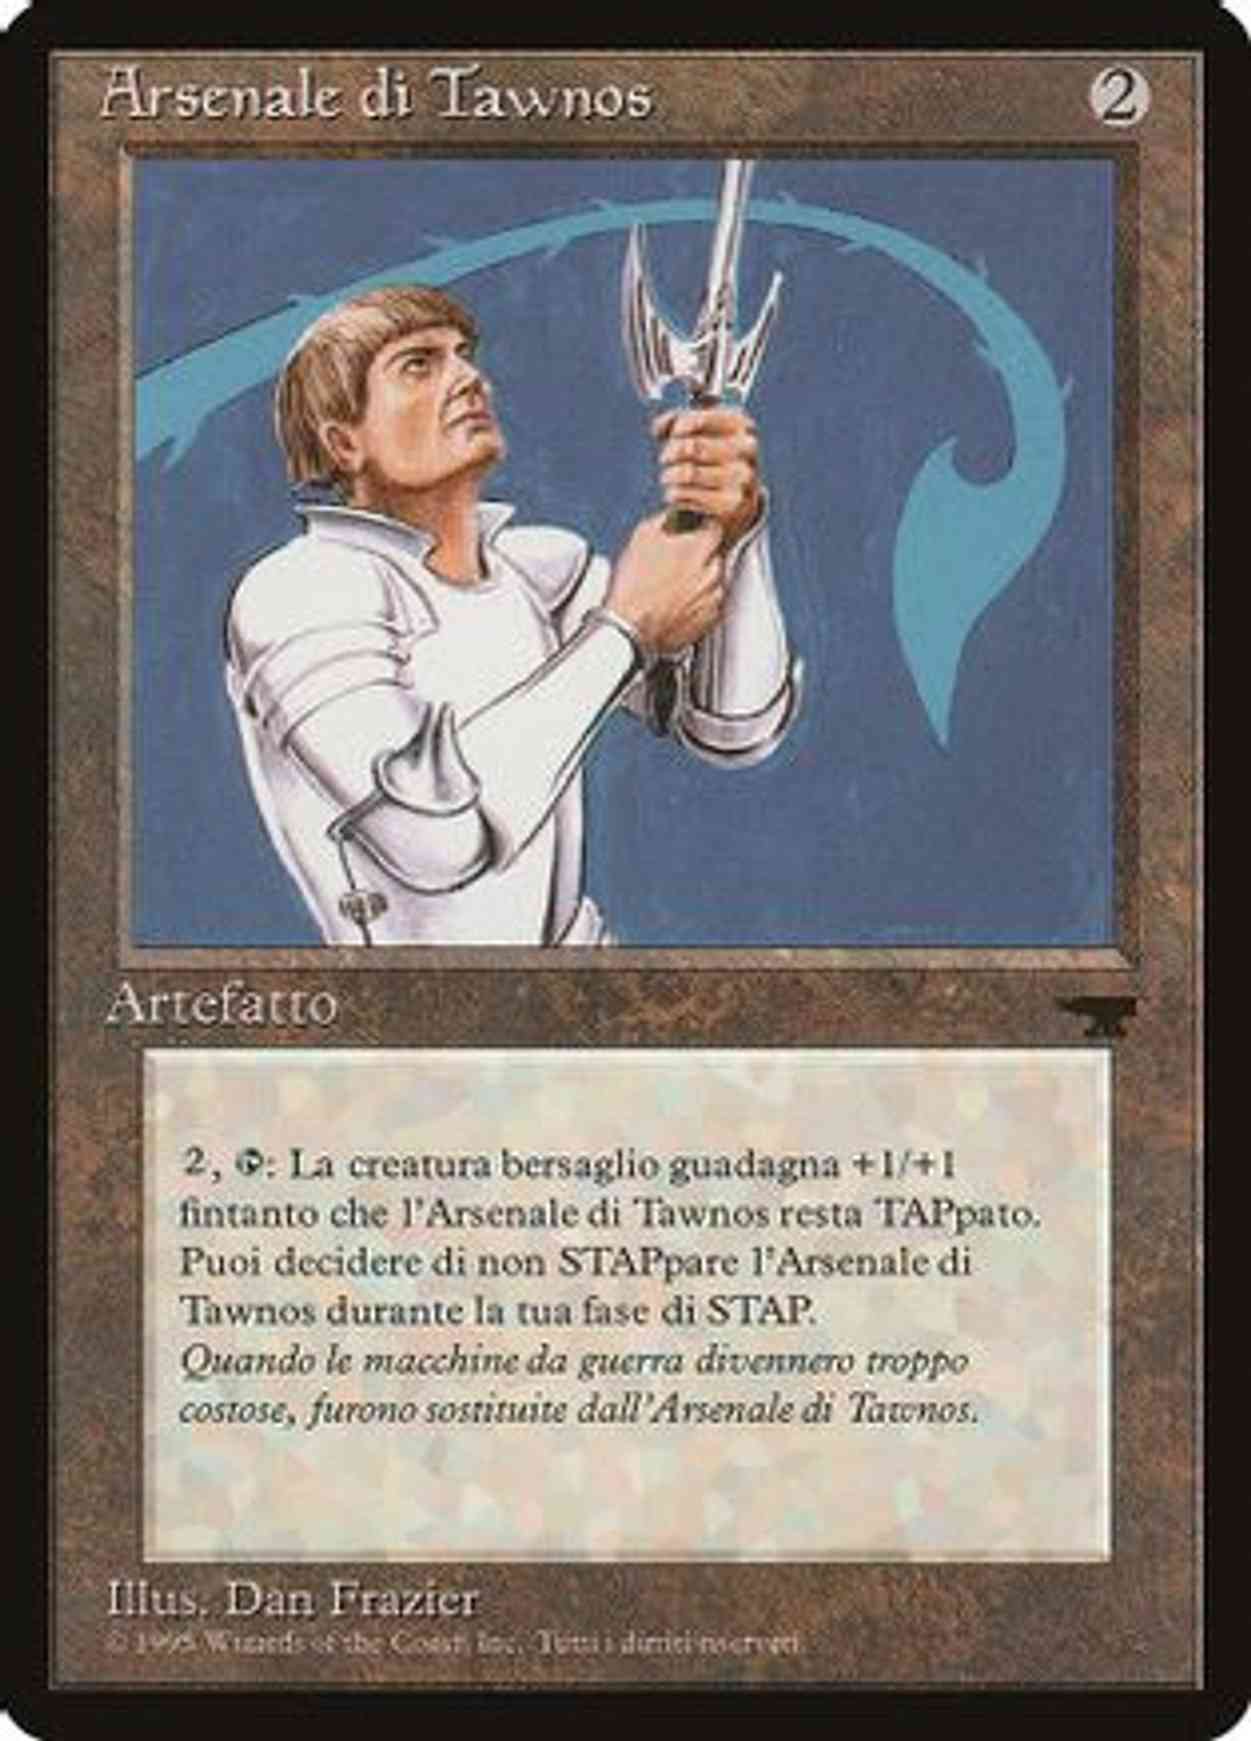 Tawnos's Weaponry (Italian) - "Arsenale di Tawnos" magic card front